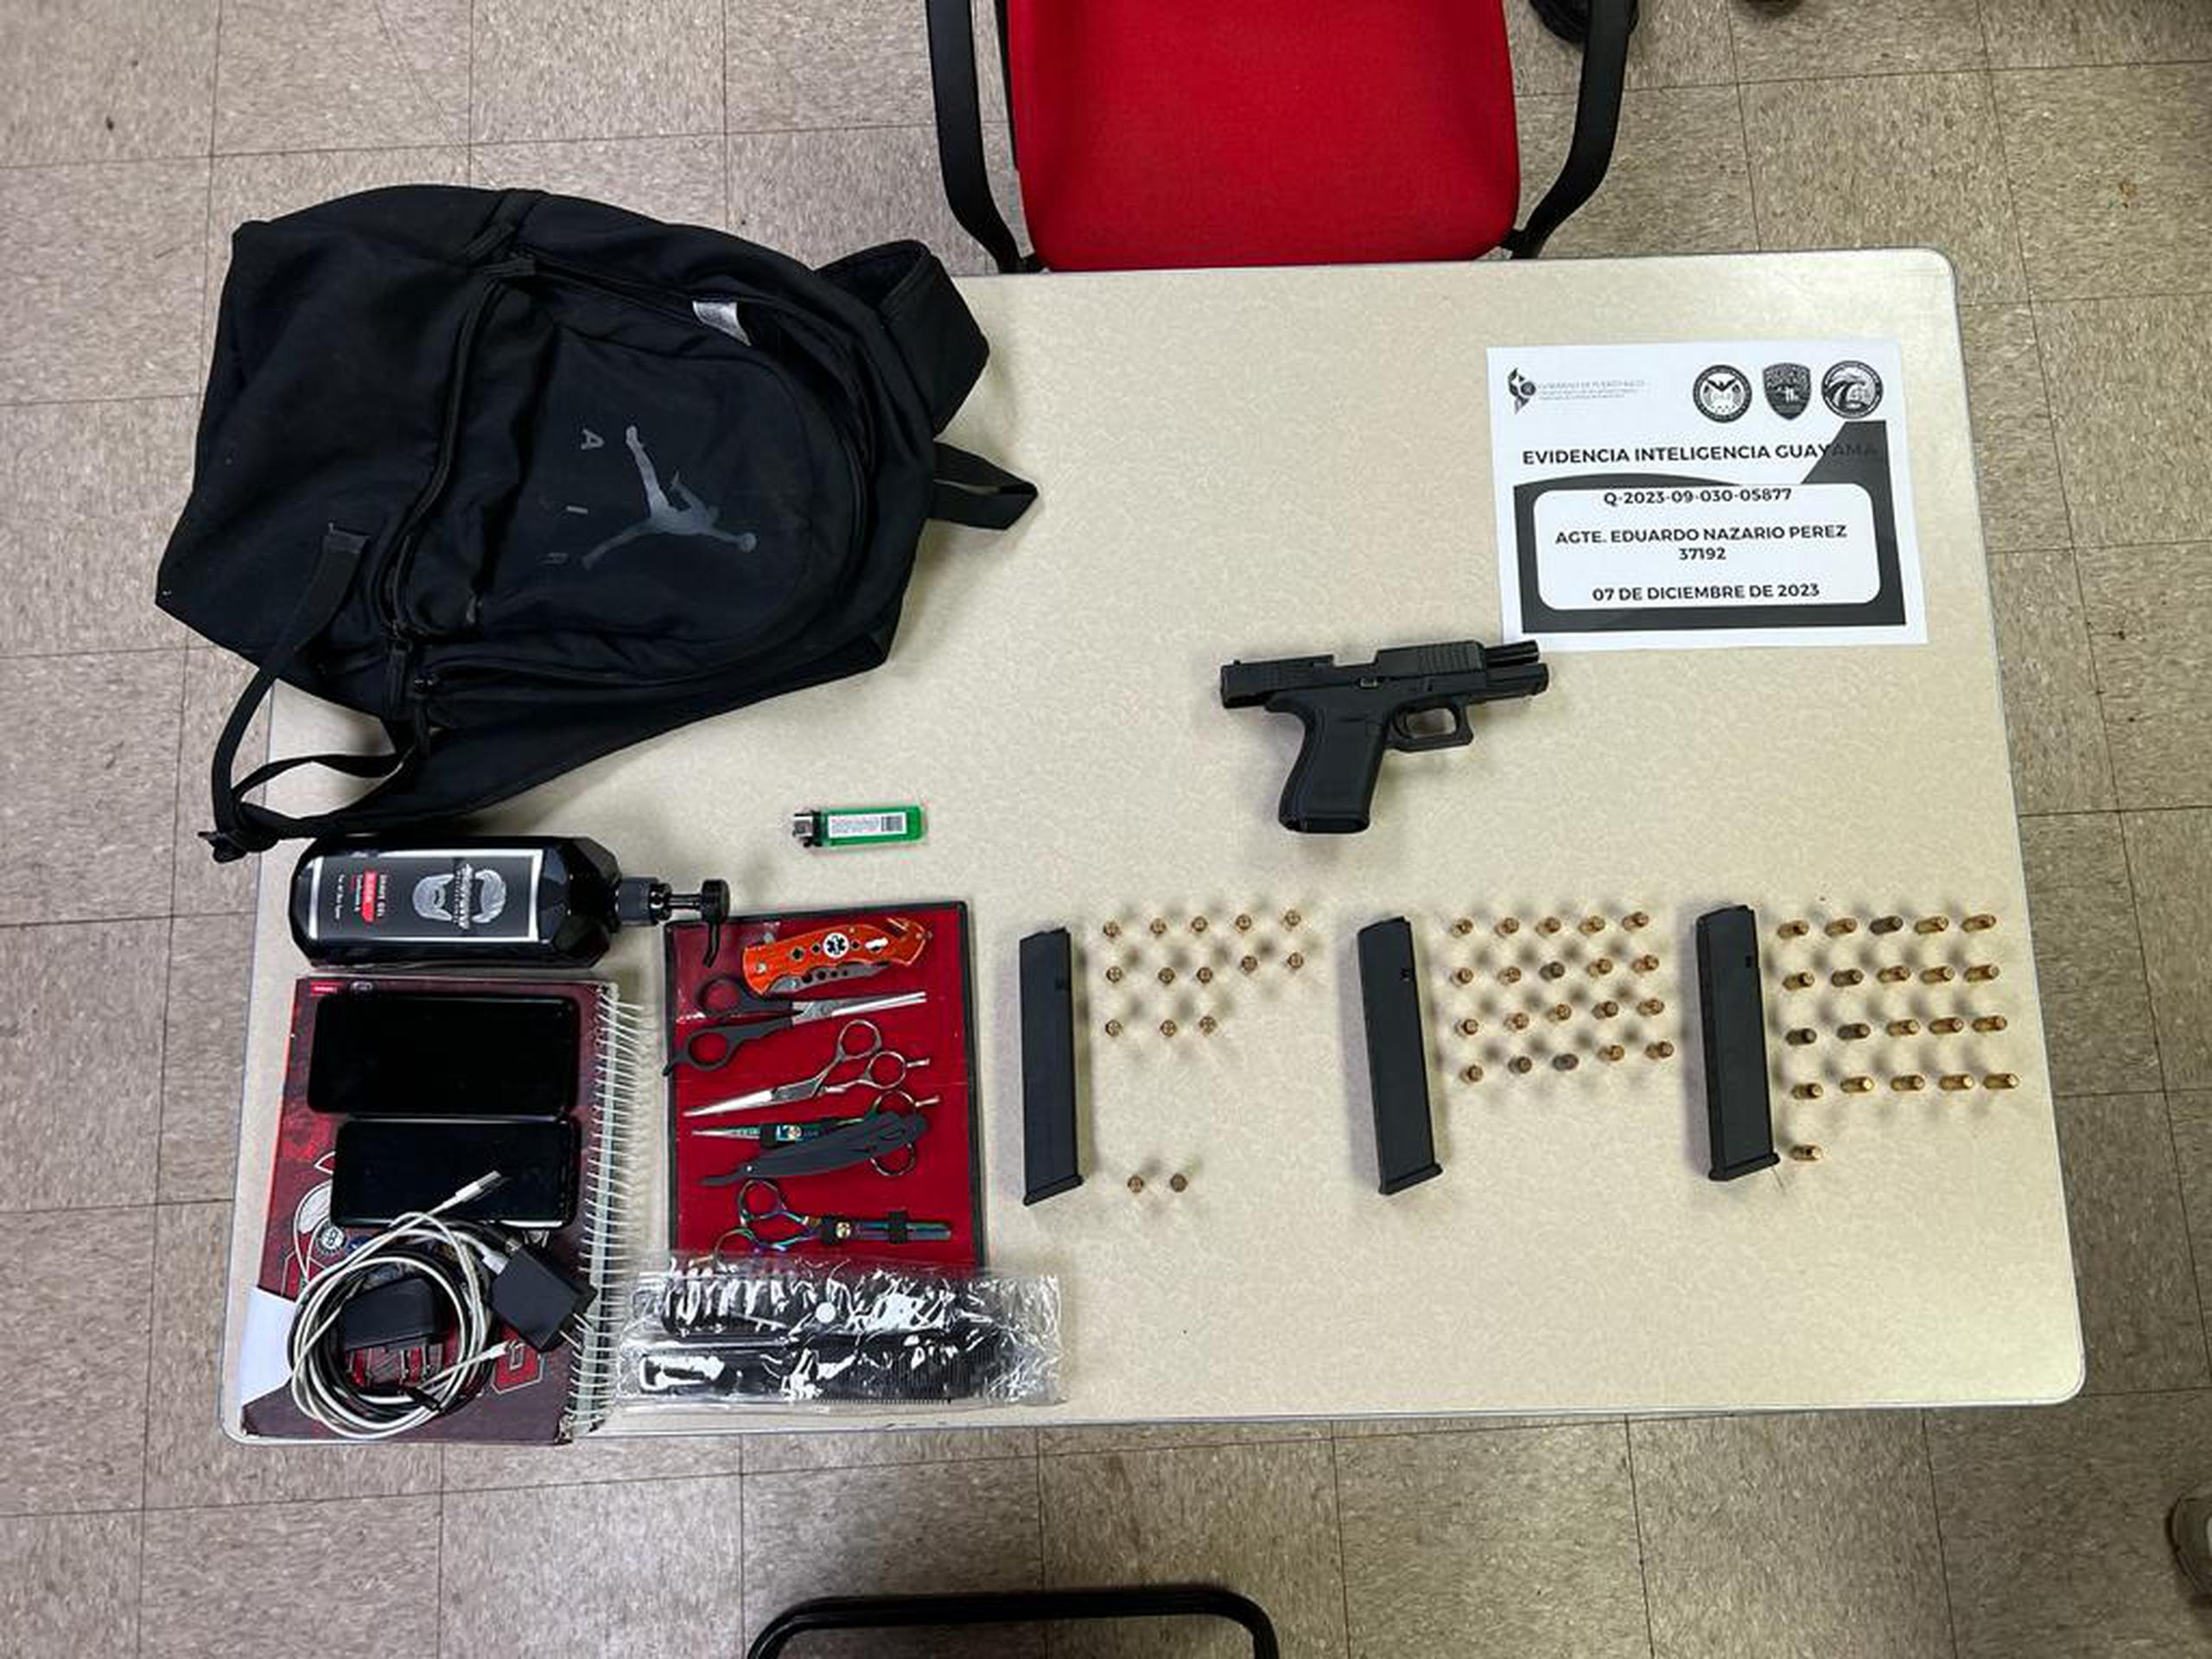 La pistola y las municiones que los agentes ocuparon tras intervenir con los jóvenes en Guayama.